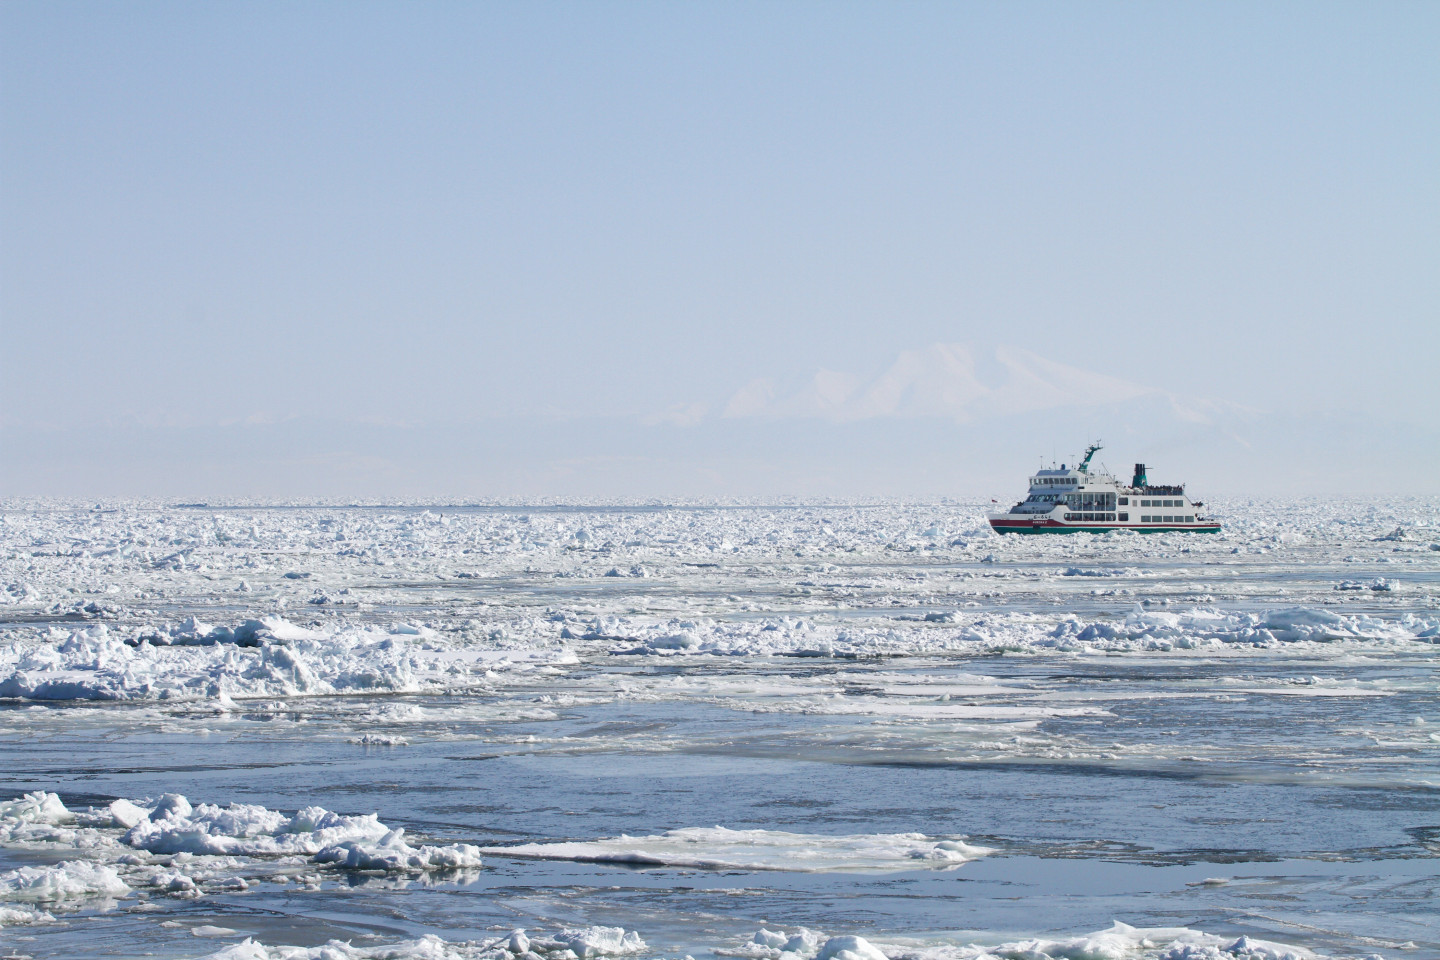 要如何享受流冰呢？利用流冰觀光船來進行流冰觀測，體驗冰之海。